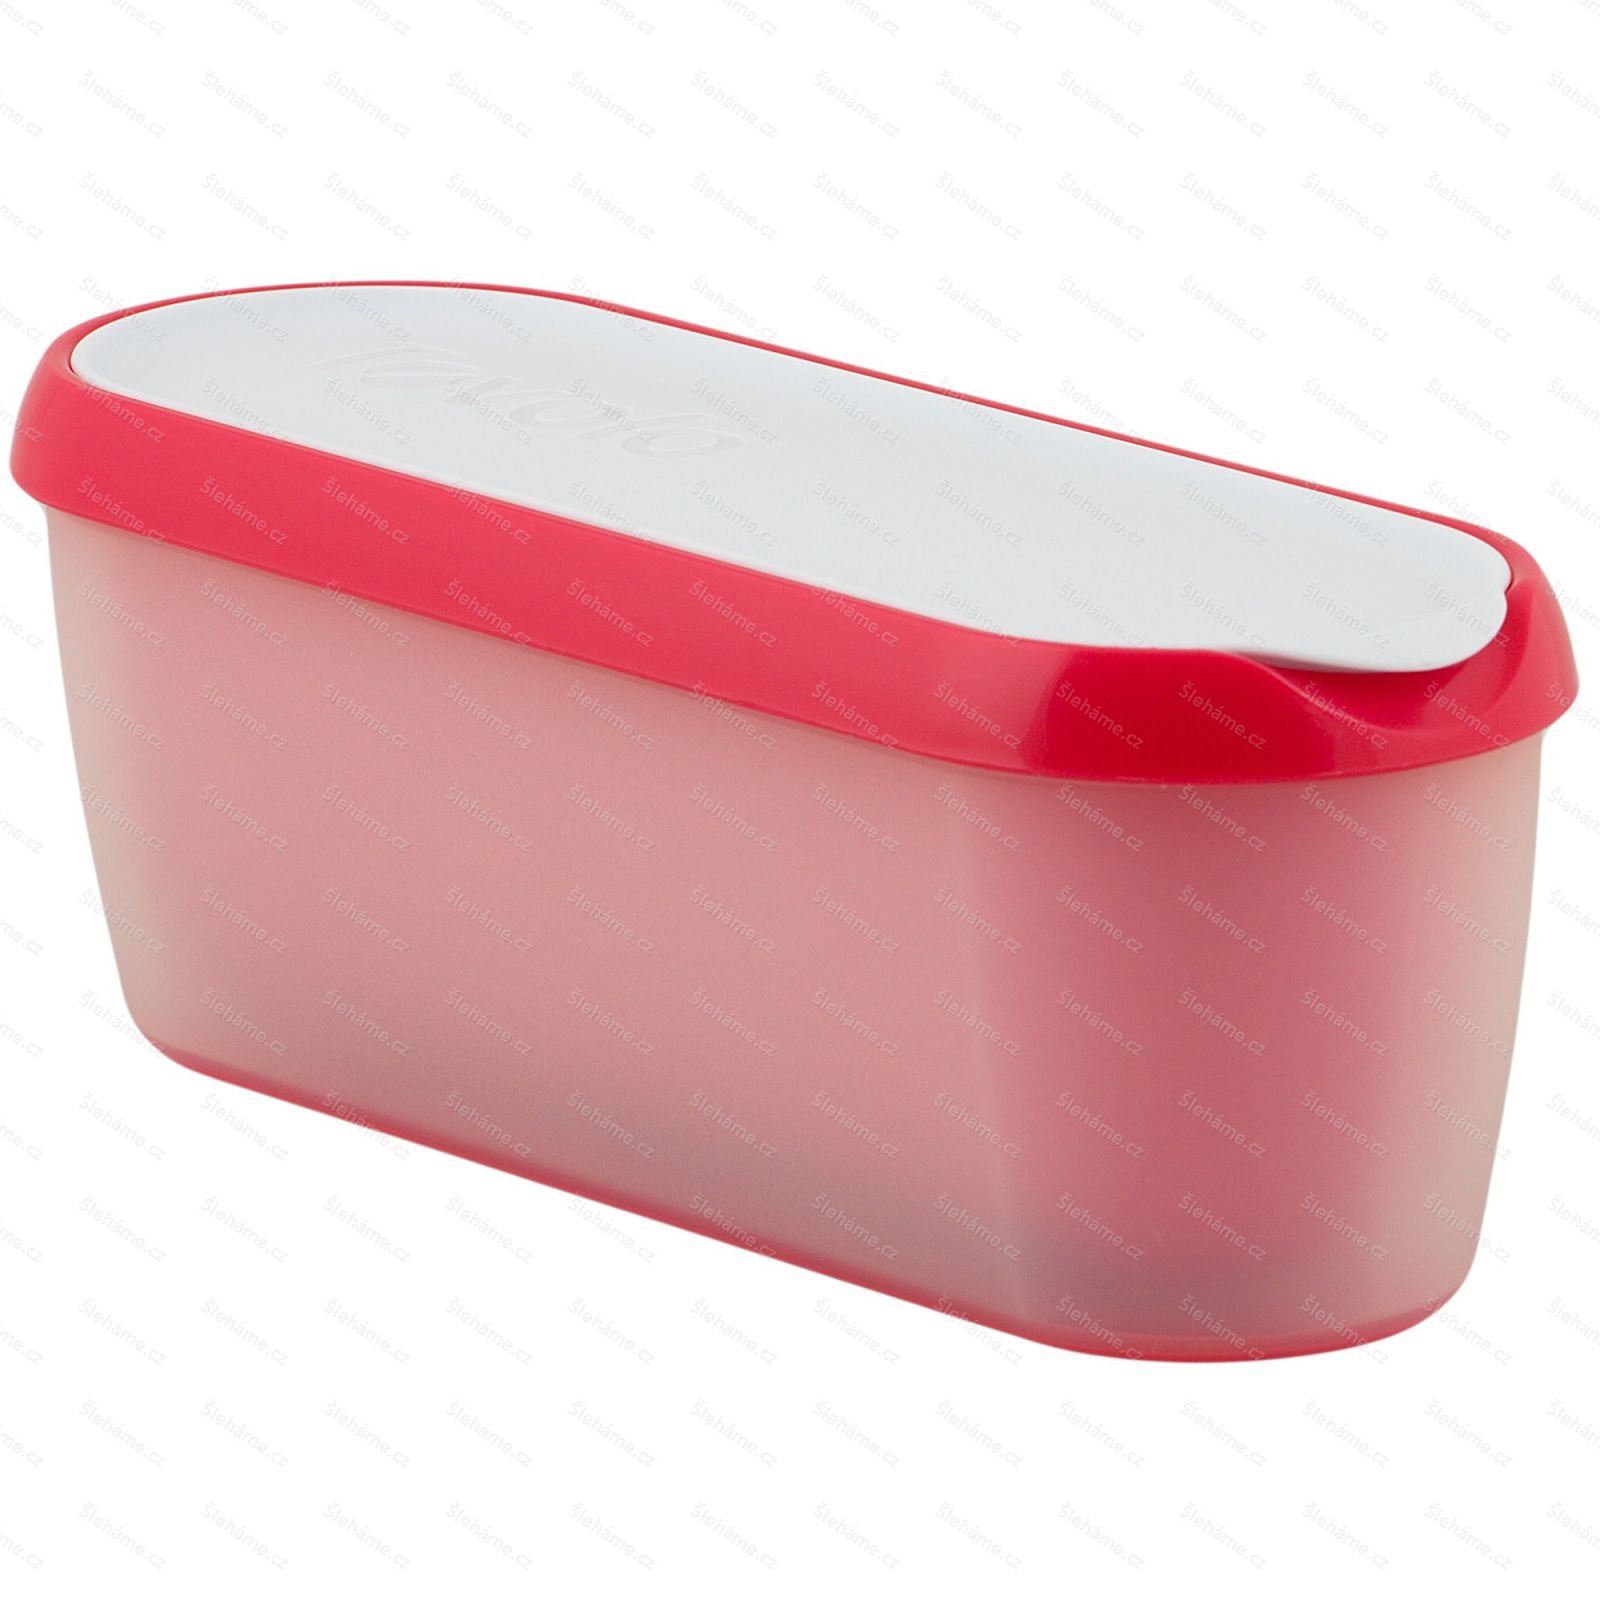 Ice cream tub Tovolo GLIDE-A-SCOOP 1.4 l, strawberry sorbet - hlavný pohľad